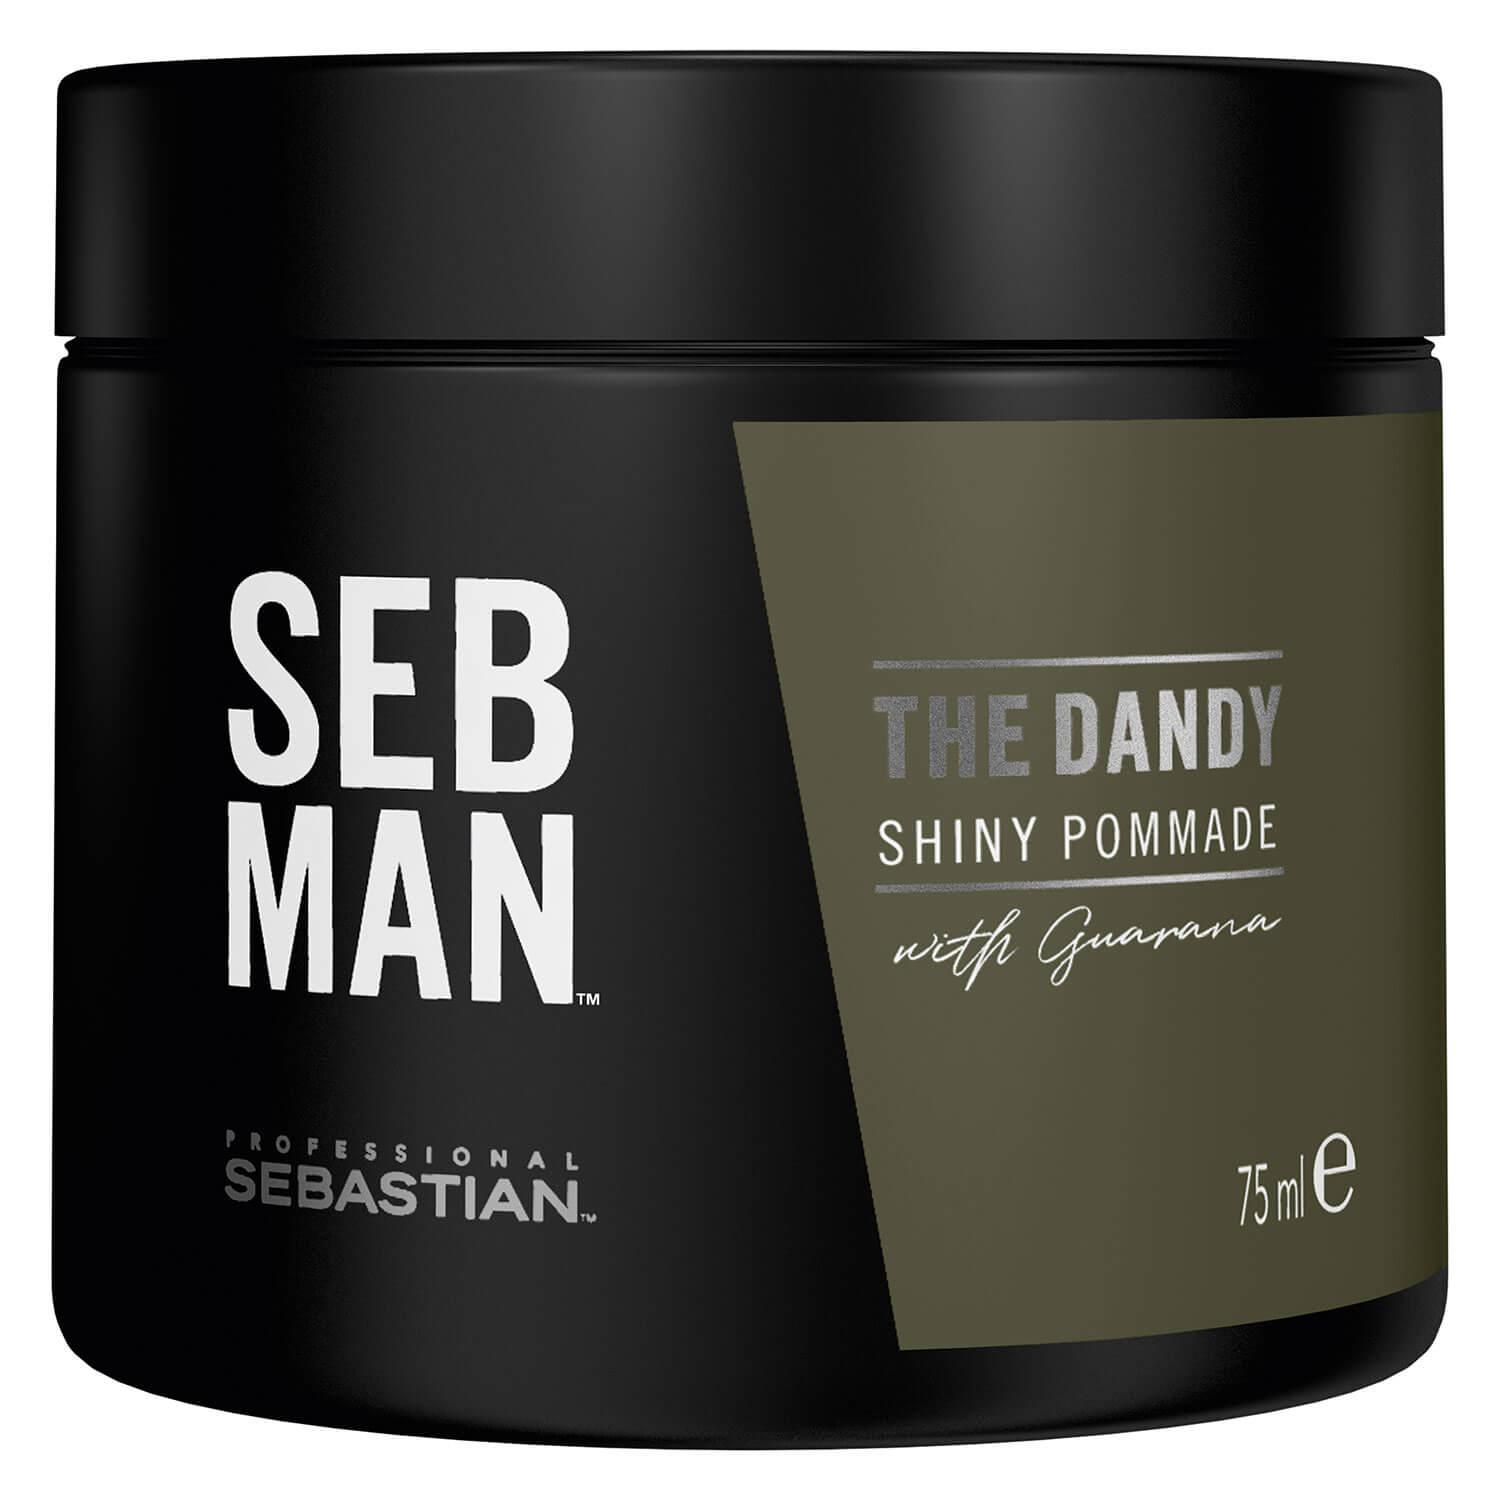 SEB MAN - The Dandy Shiny Pommade